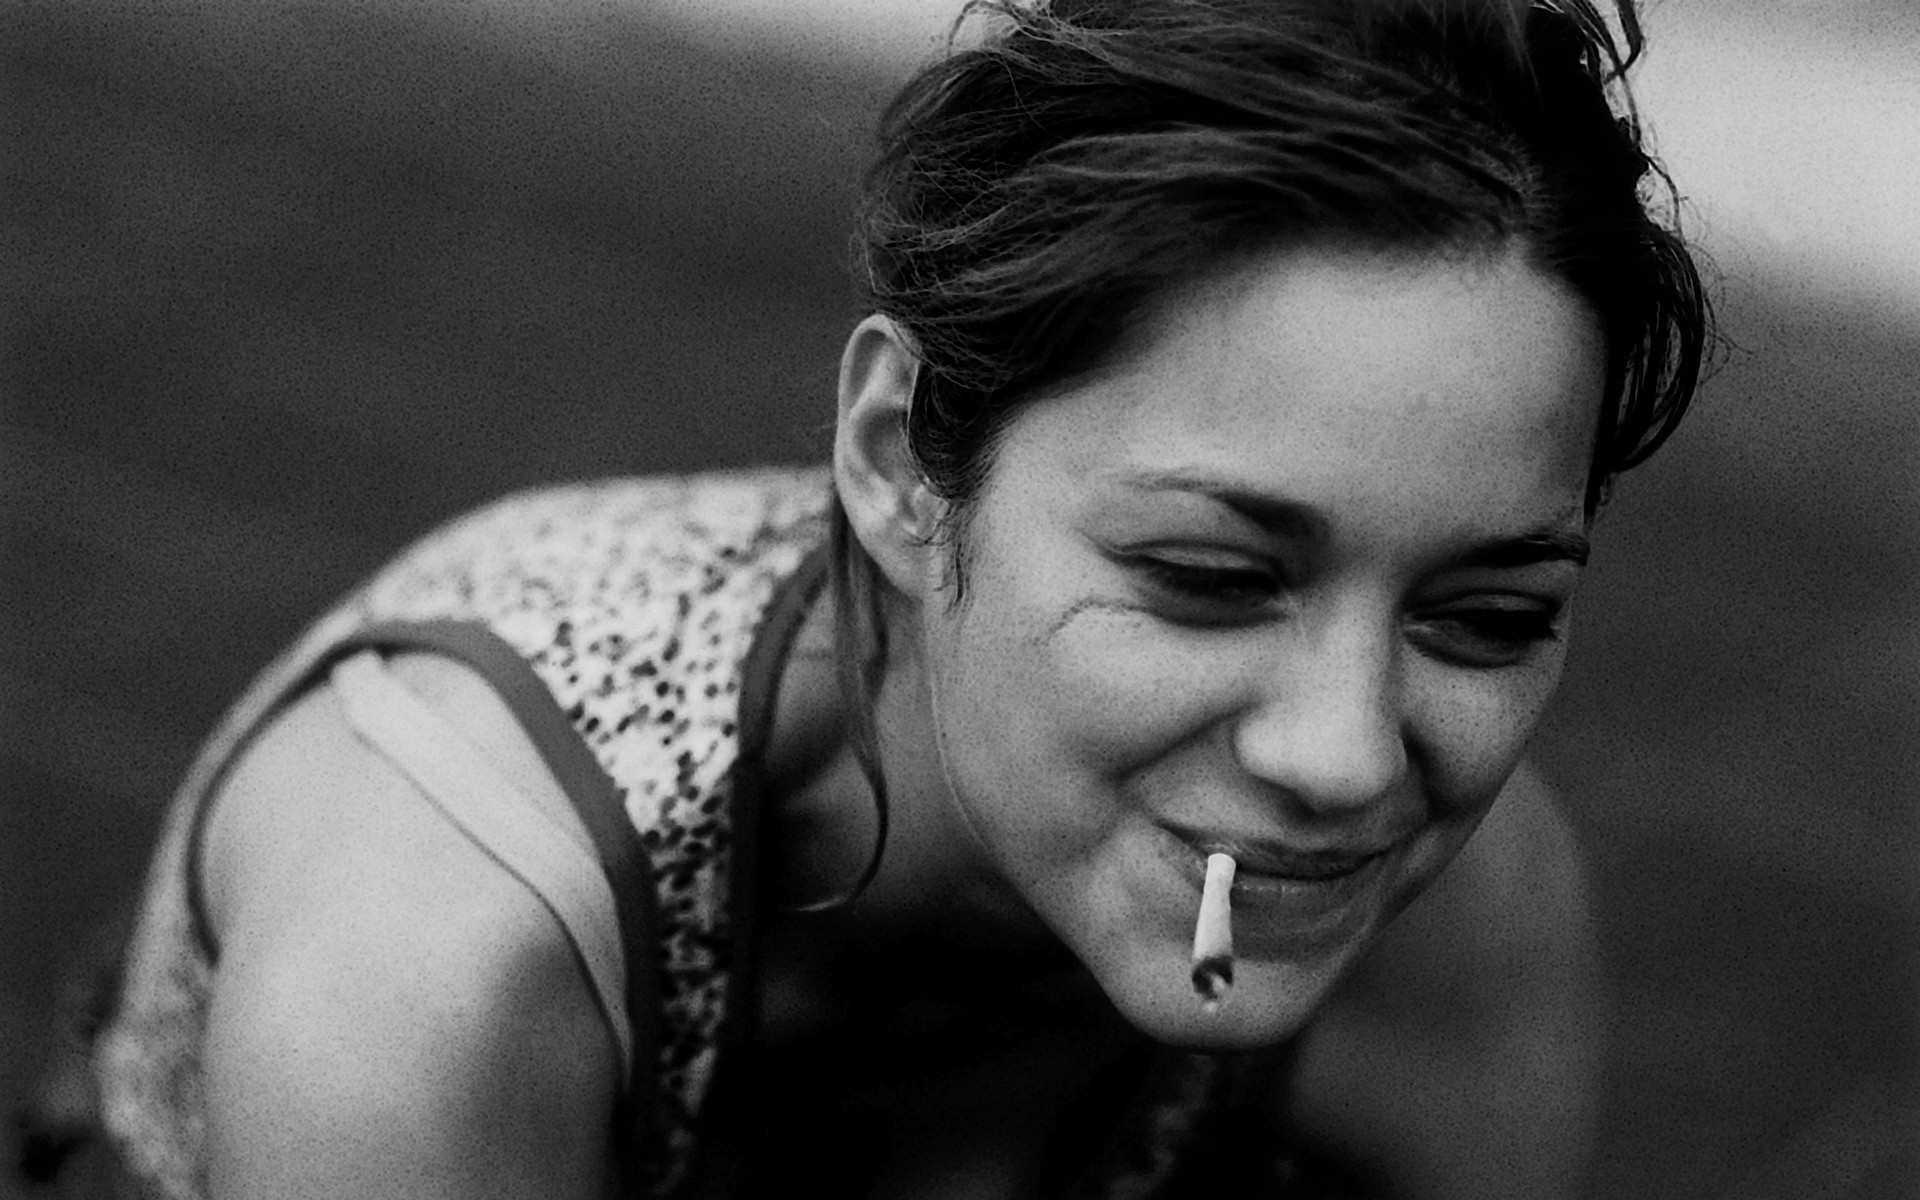 Marion Cotillard fumando un cigarrillo (o marihuana)
